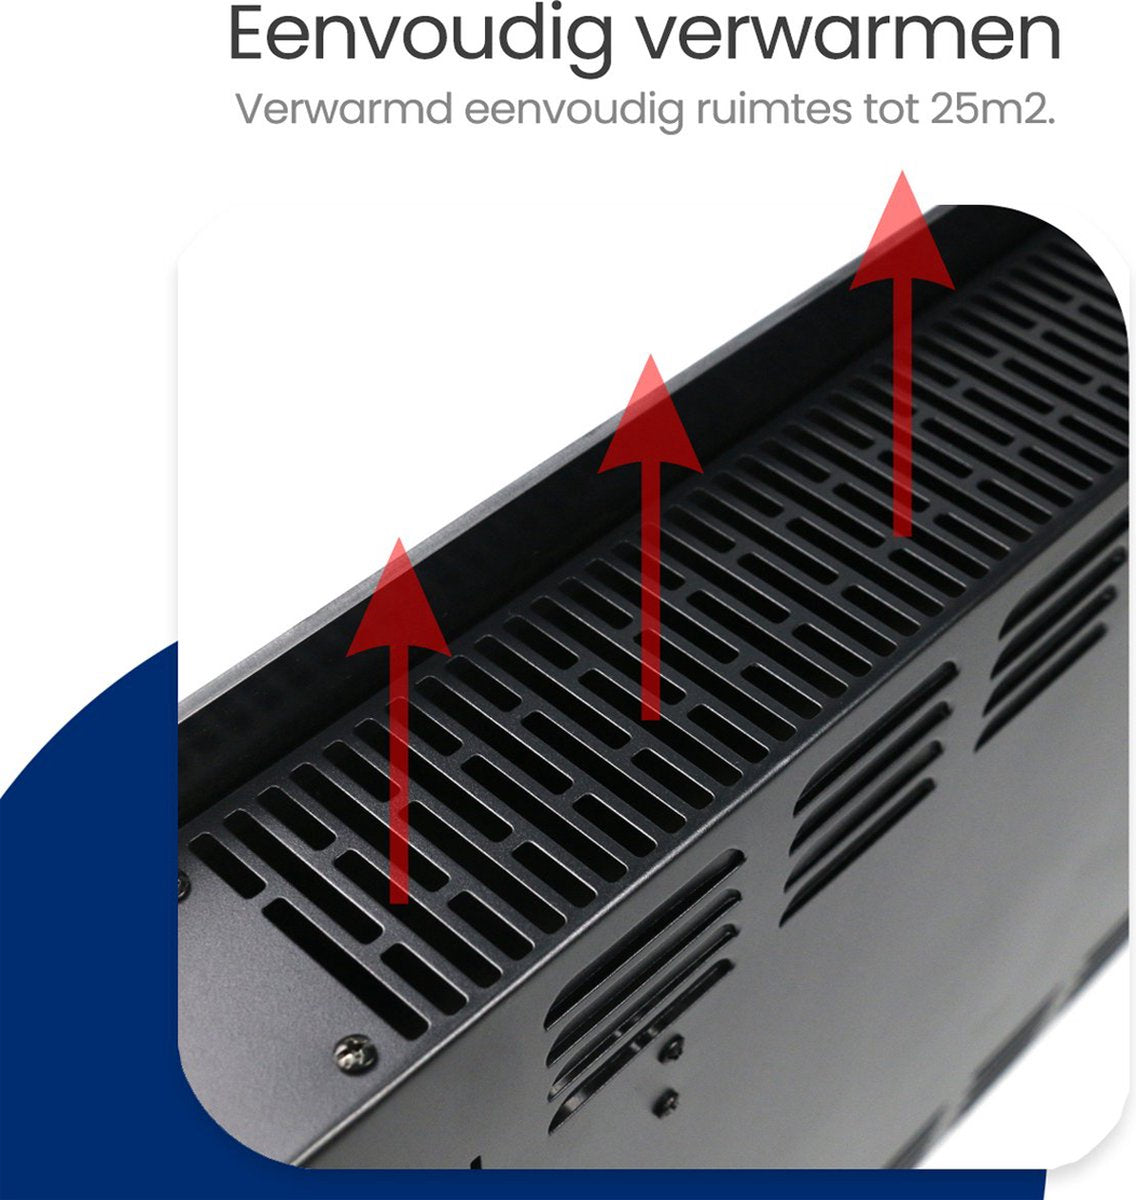 Gologi Elektrische Kachel - Verwarming elektrisch - Convectorkachel met thermostaat  - Werkt via App en touch bediening - Tot 25m2 - 2000W Heater - Zwart